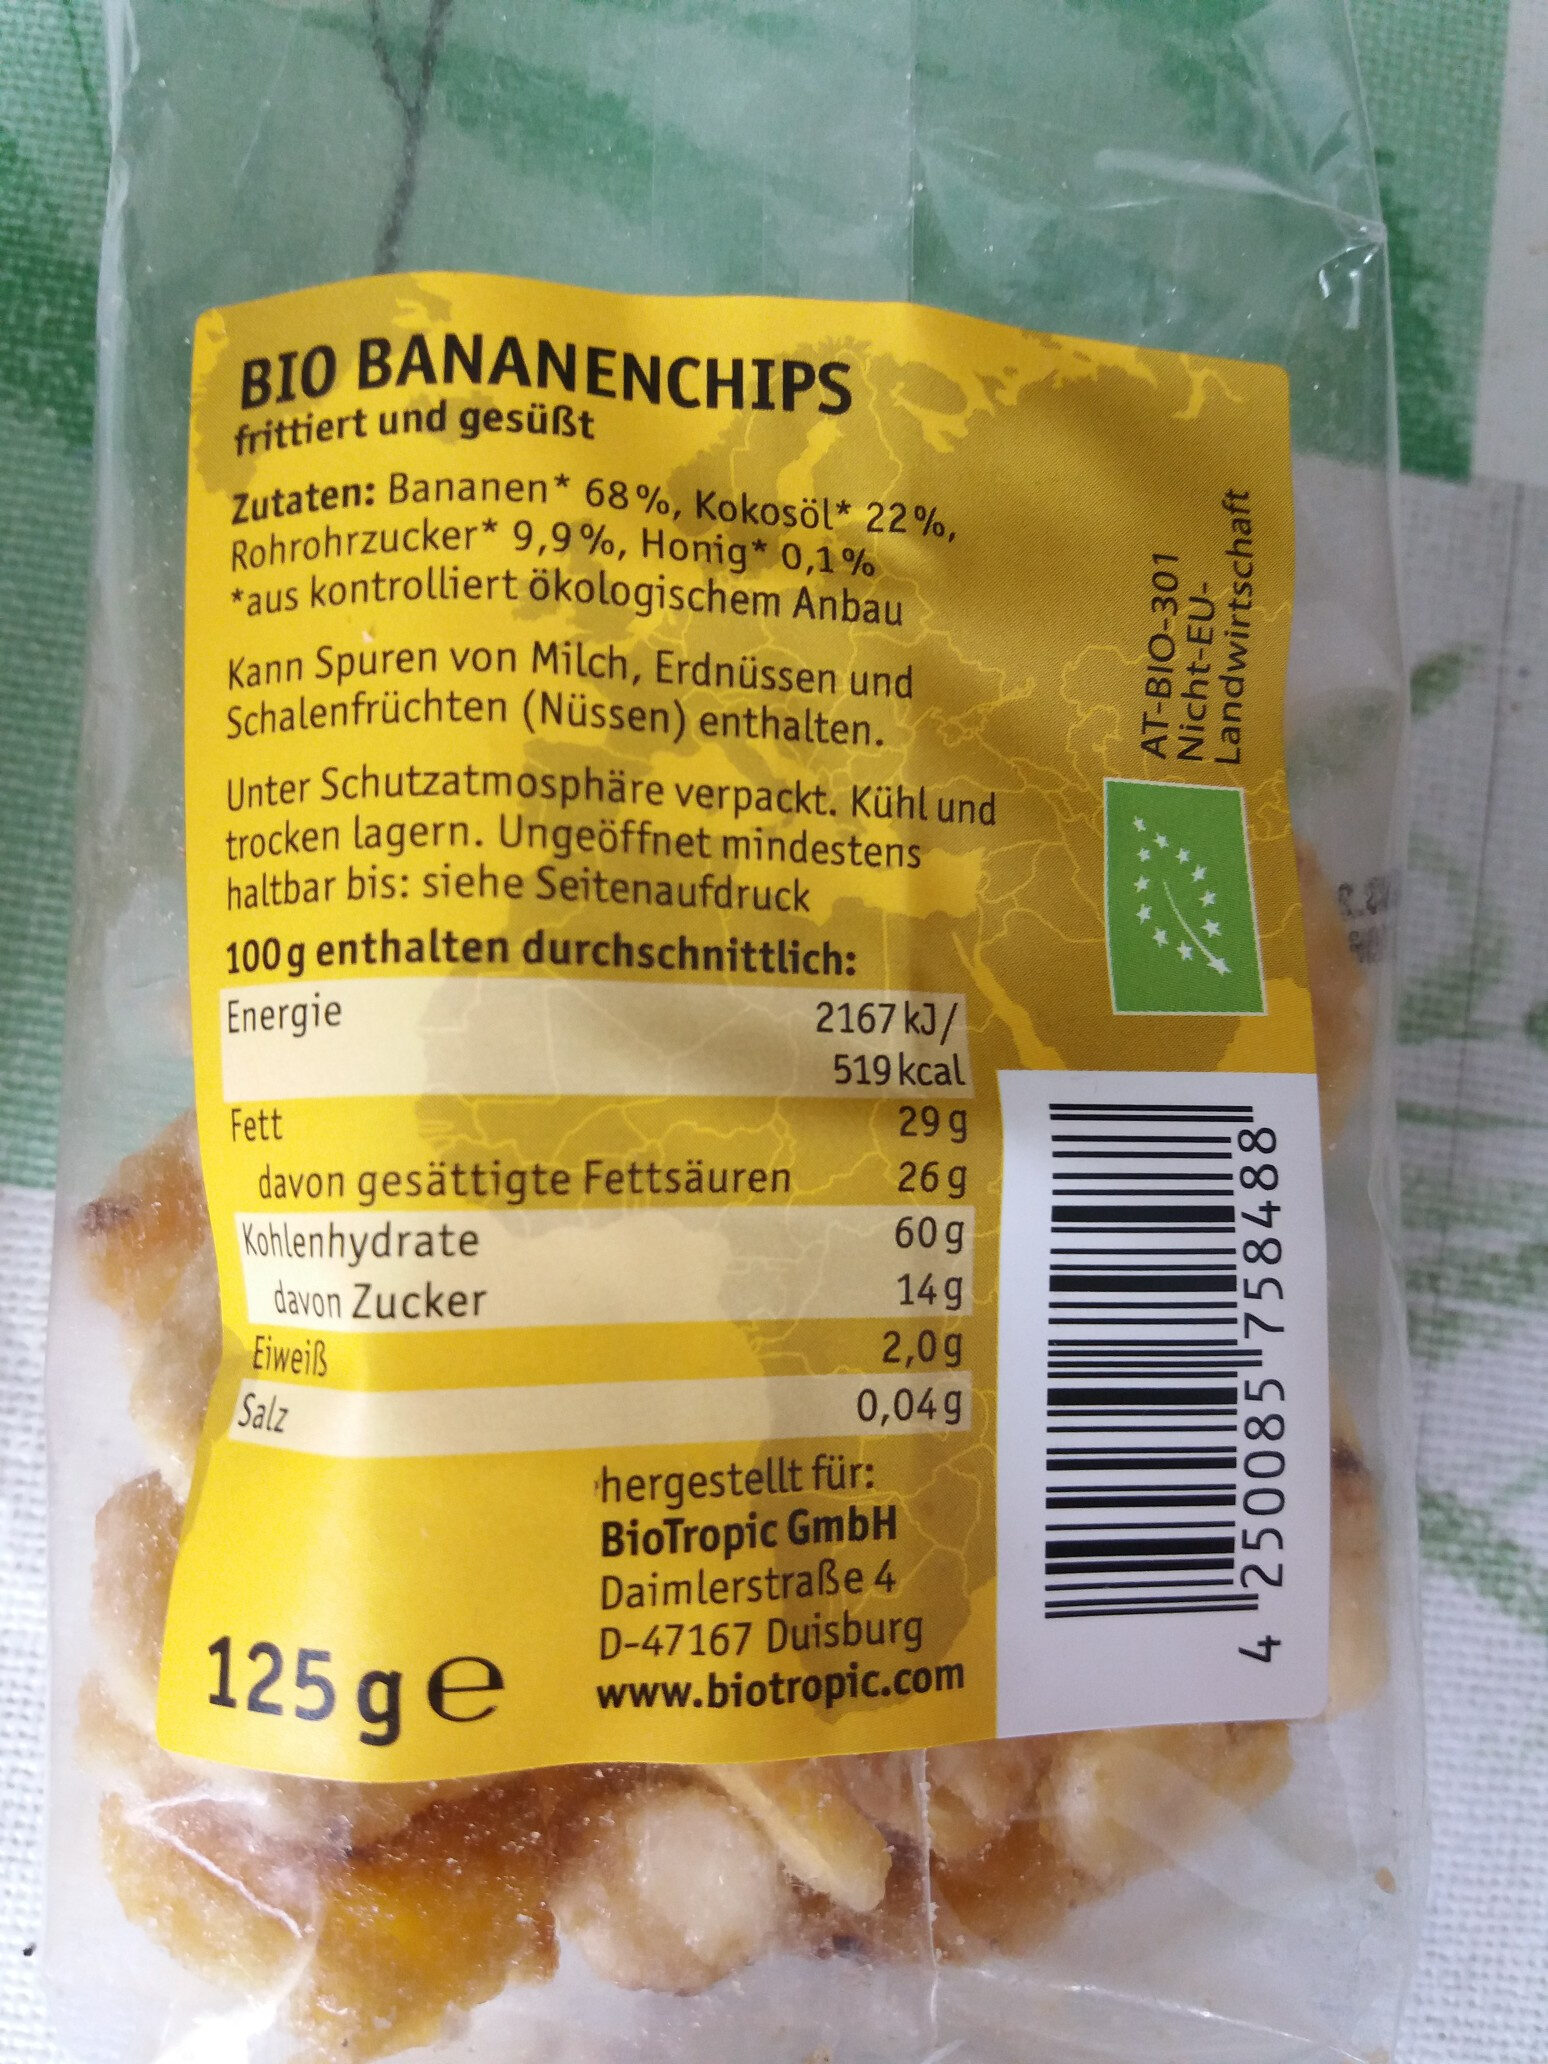 Bananen chips - Ingredients - de